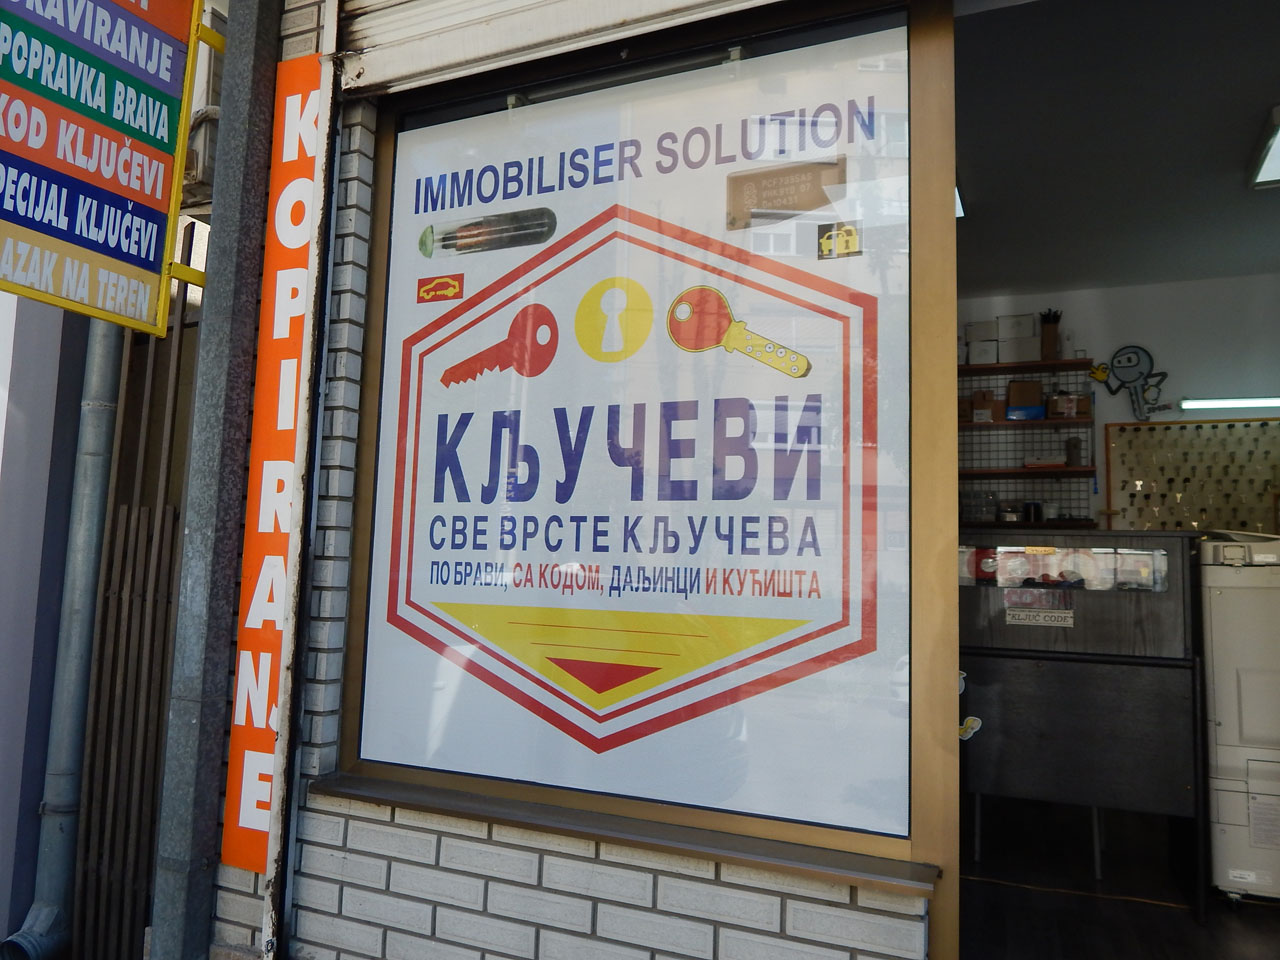 KEY CODE Locksmith shops Kragujevac - Photo 3